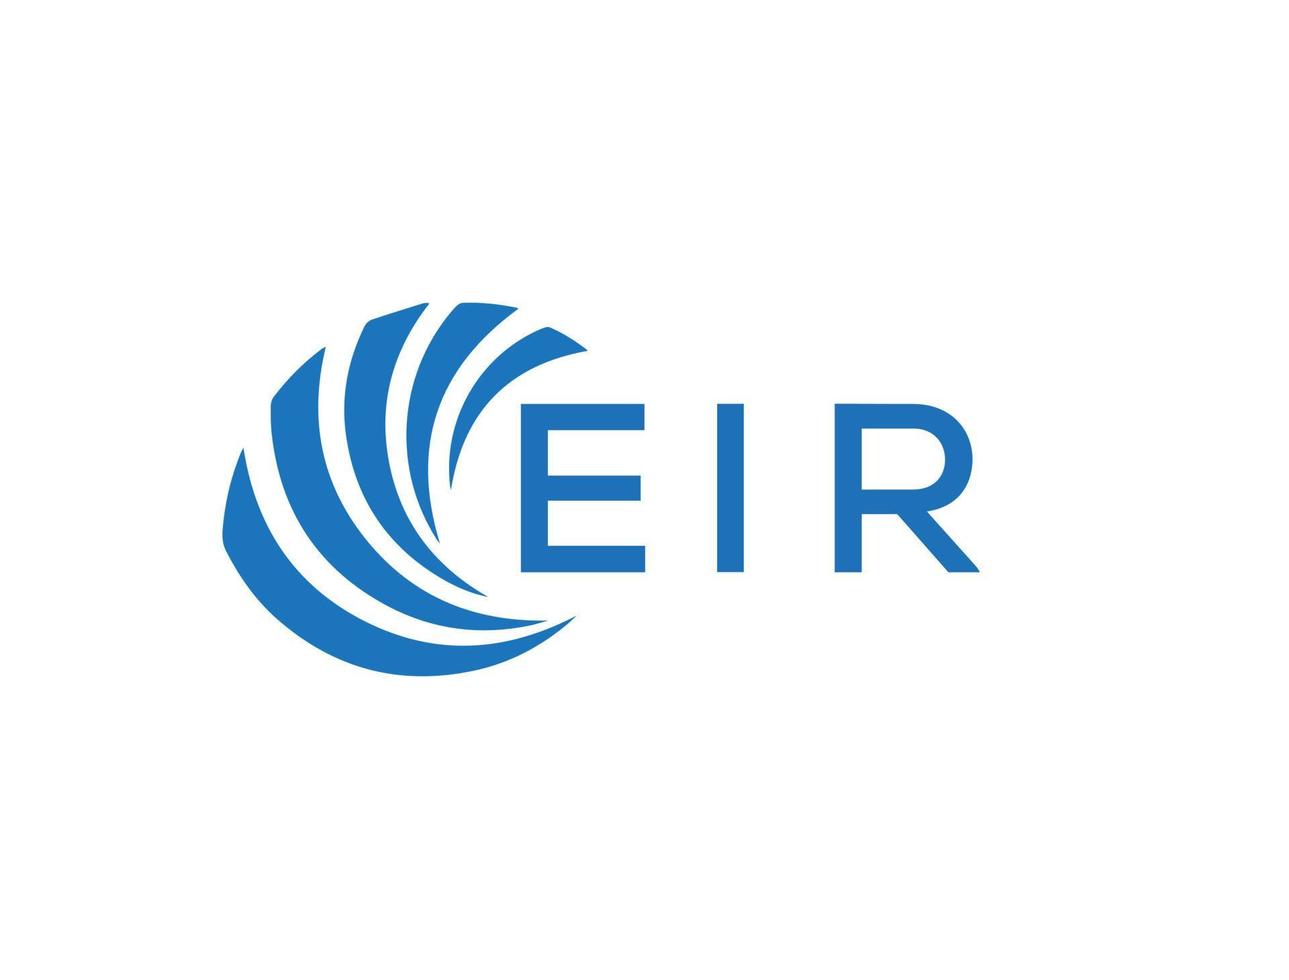 ELR letter logo design on white background. ELR creative circle letter logo concept. ELR letter design. vector